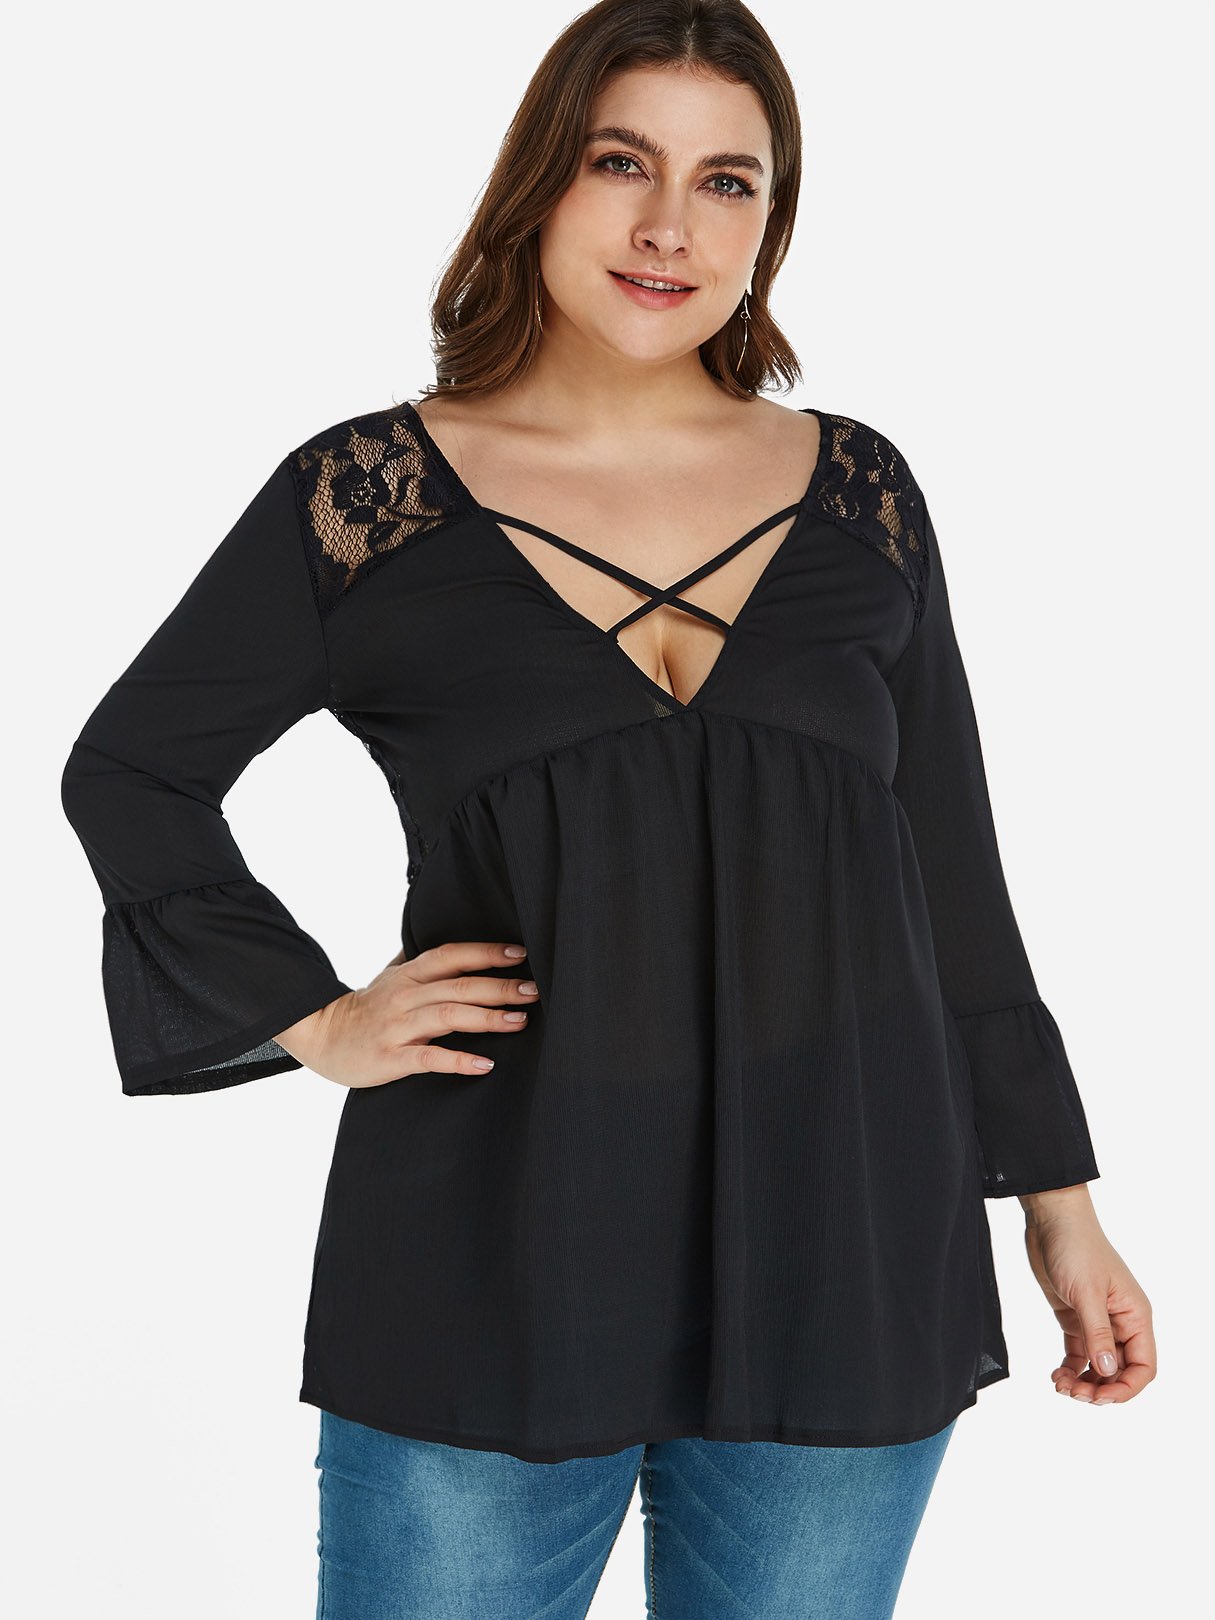 Wholesale V-Neck Plain Lace Long Sleeve Black Plus Size Tops